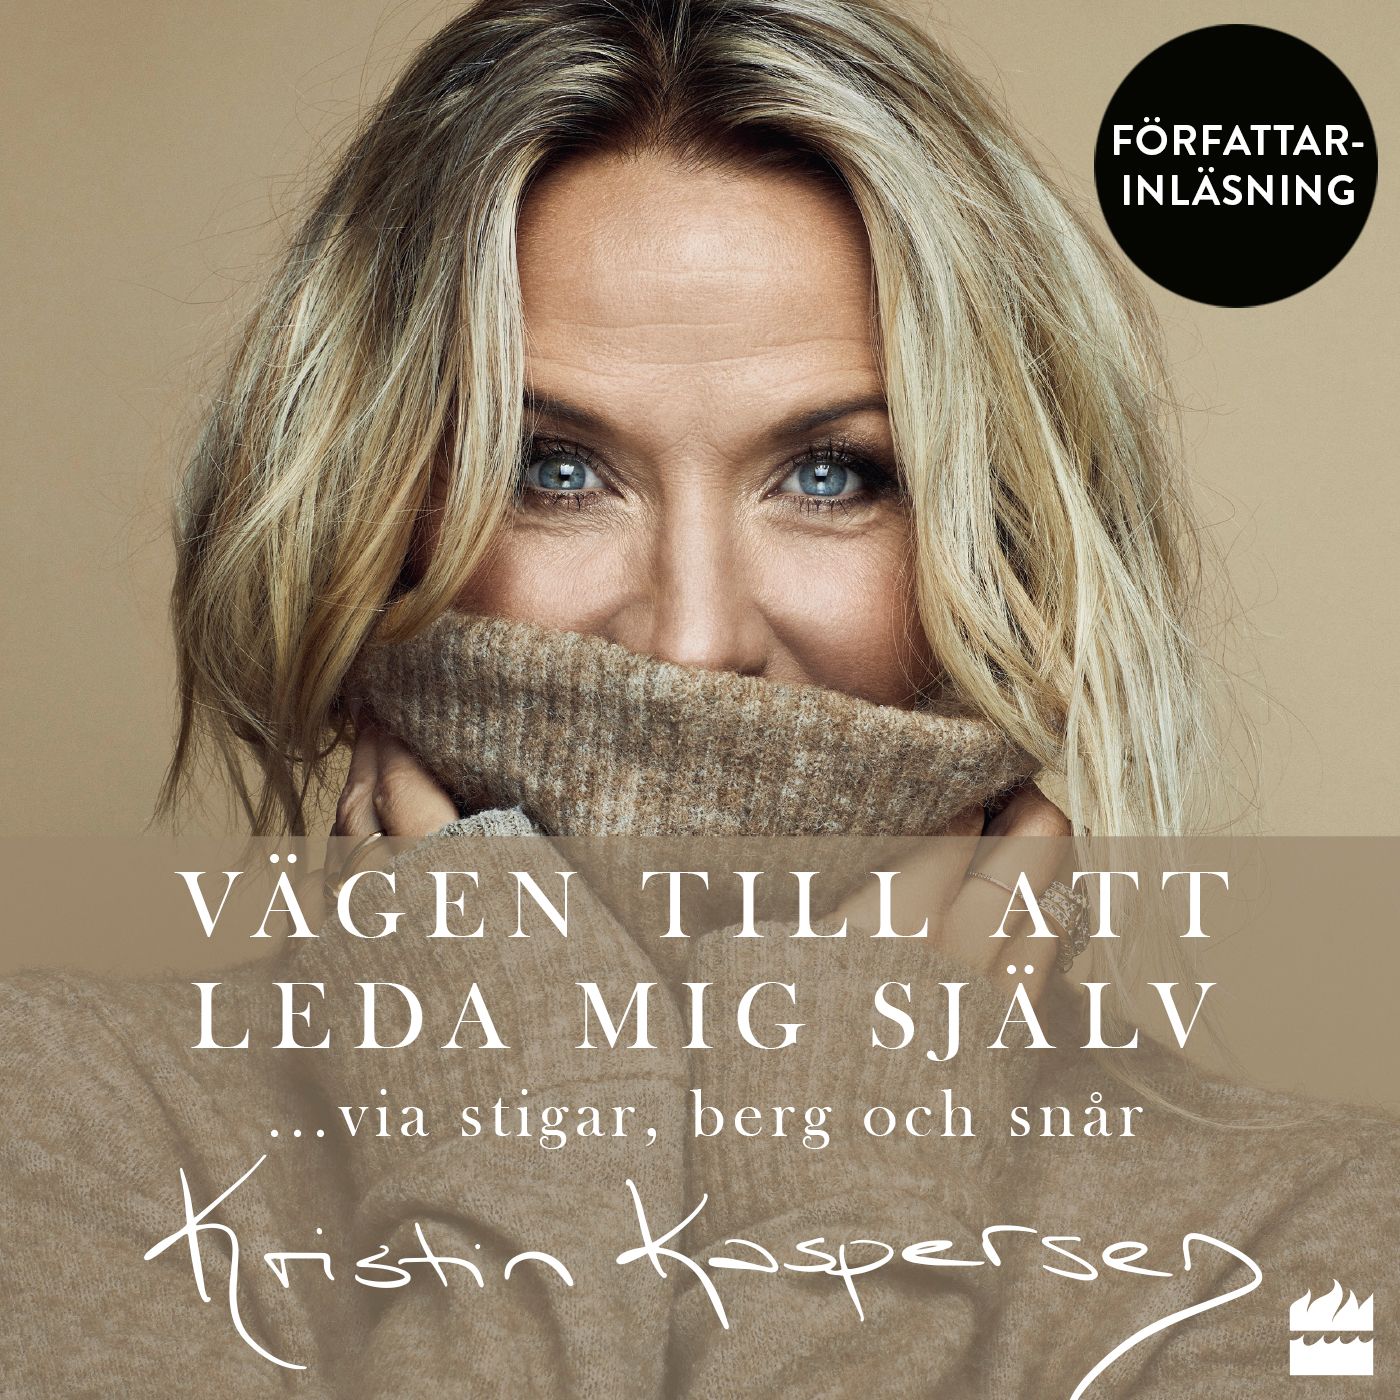 Vägen till att leda mig själv, audiobook by Kristin Kaspersen